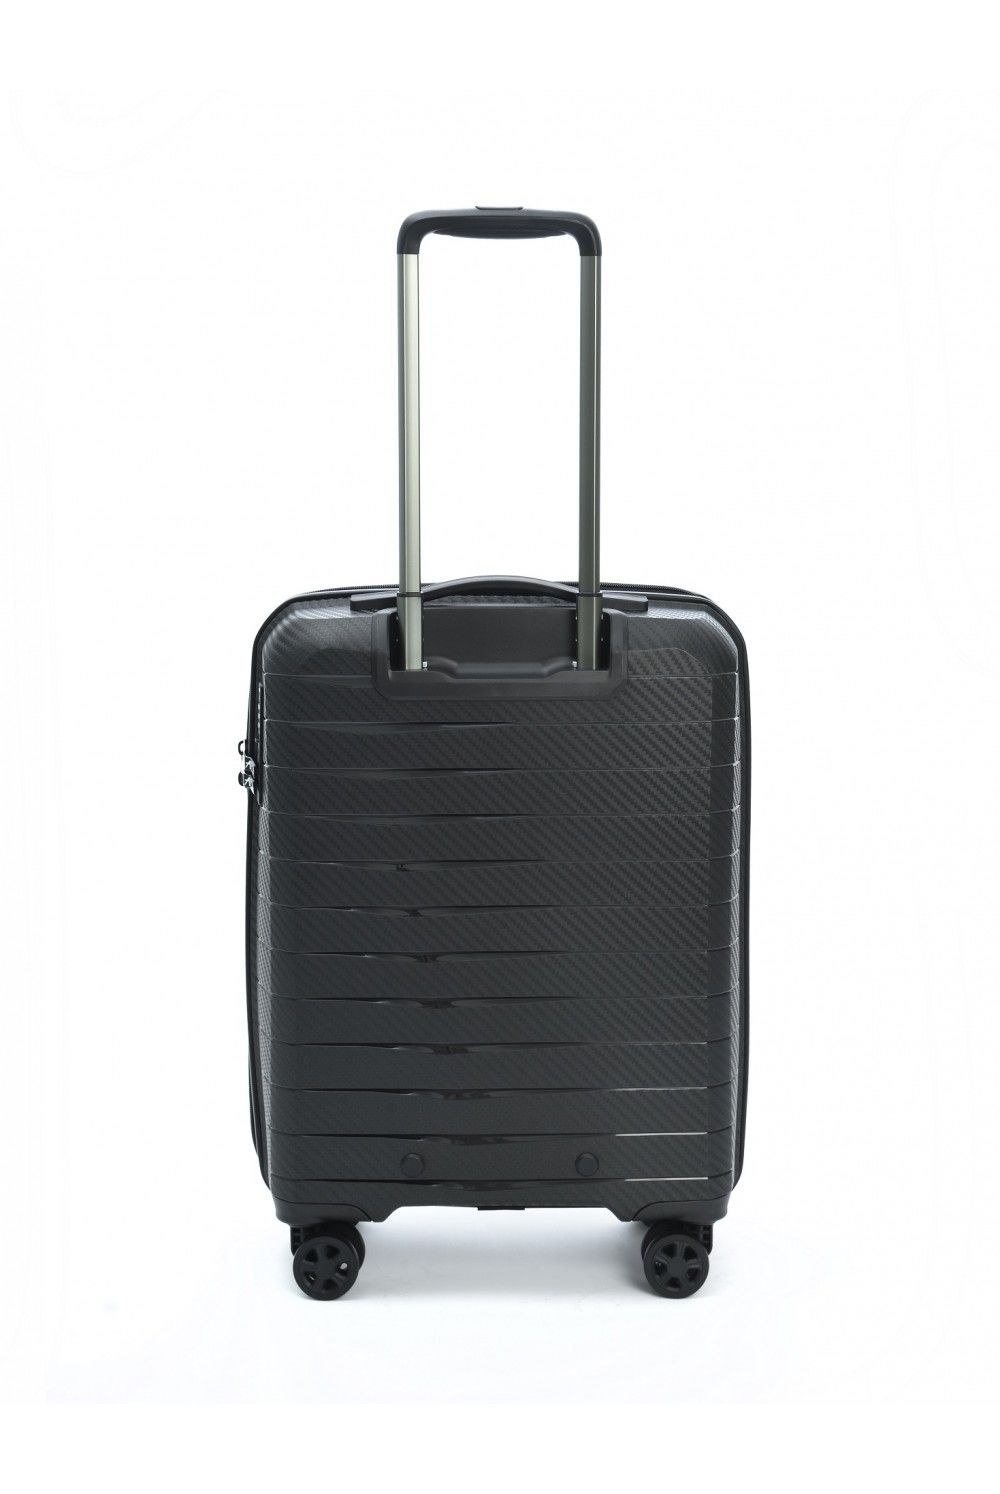 Handgepäck Koffer AIRBOX AZ18 55cm 4 Rad schwarz